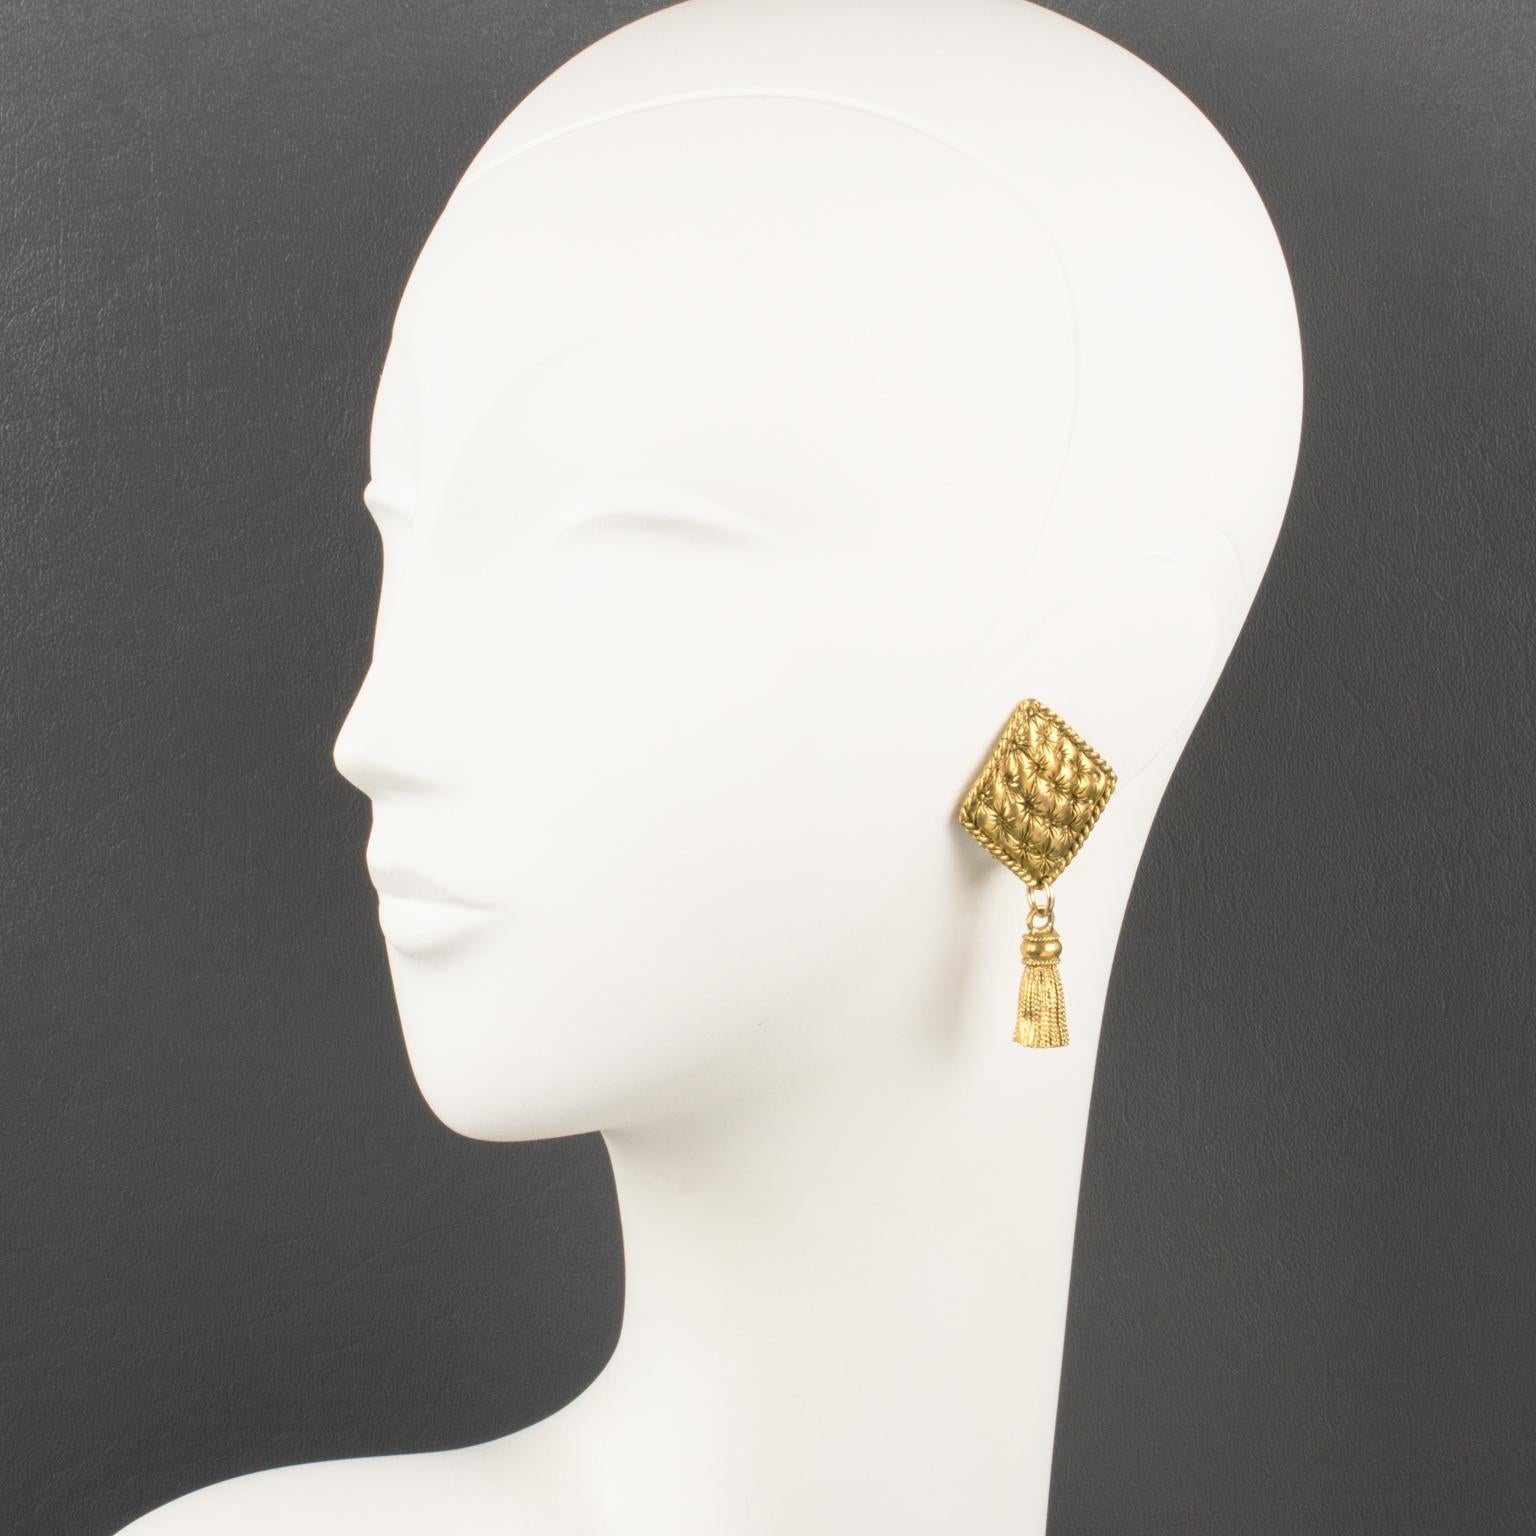 Diese eleganten Clip-Ohrringe der französischen Designerin Chantal Thomass Paris haben eine baumelnde Form mit gesteppten, rautenförmigen Beschlägen aus vergoldetem Metall, die eine Quaste ergänzen. Die Stücke sind auf der Unterseite mit dem